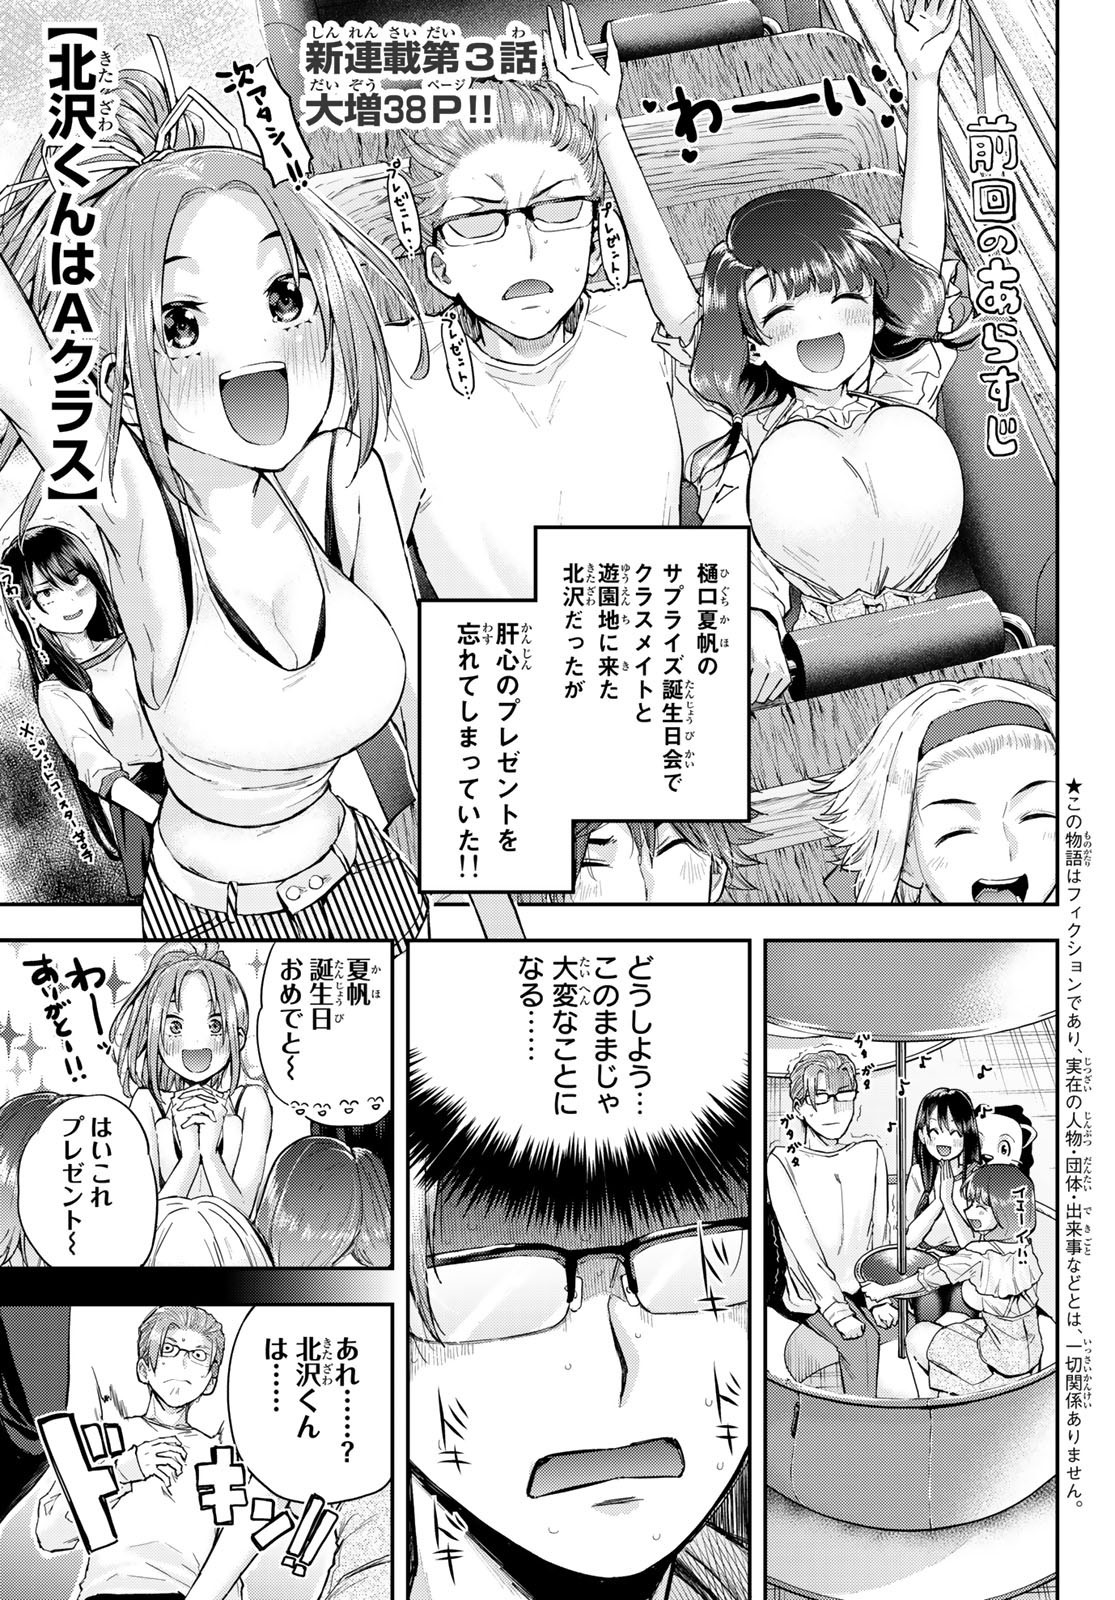 Kitazawa-kun wa A Class - Chapter 003 - Page 1